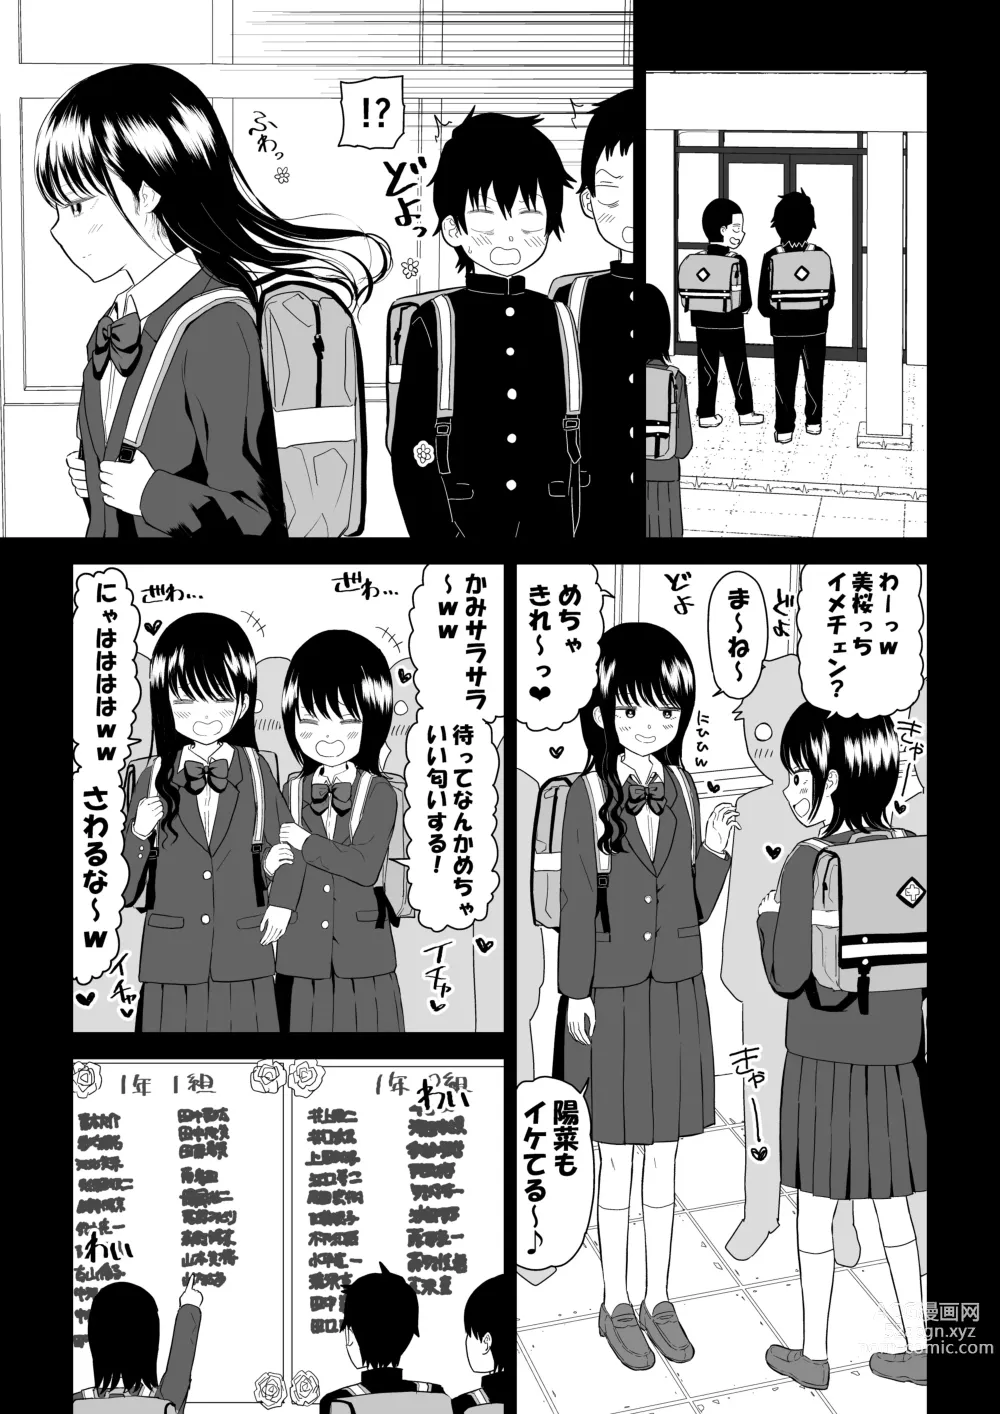 Page 5 of doujinshi Cool-Dere JK 3 Shitsurakuen Hen